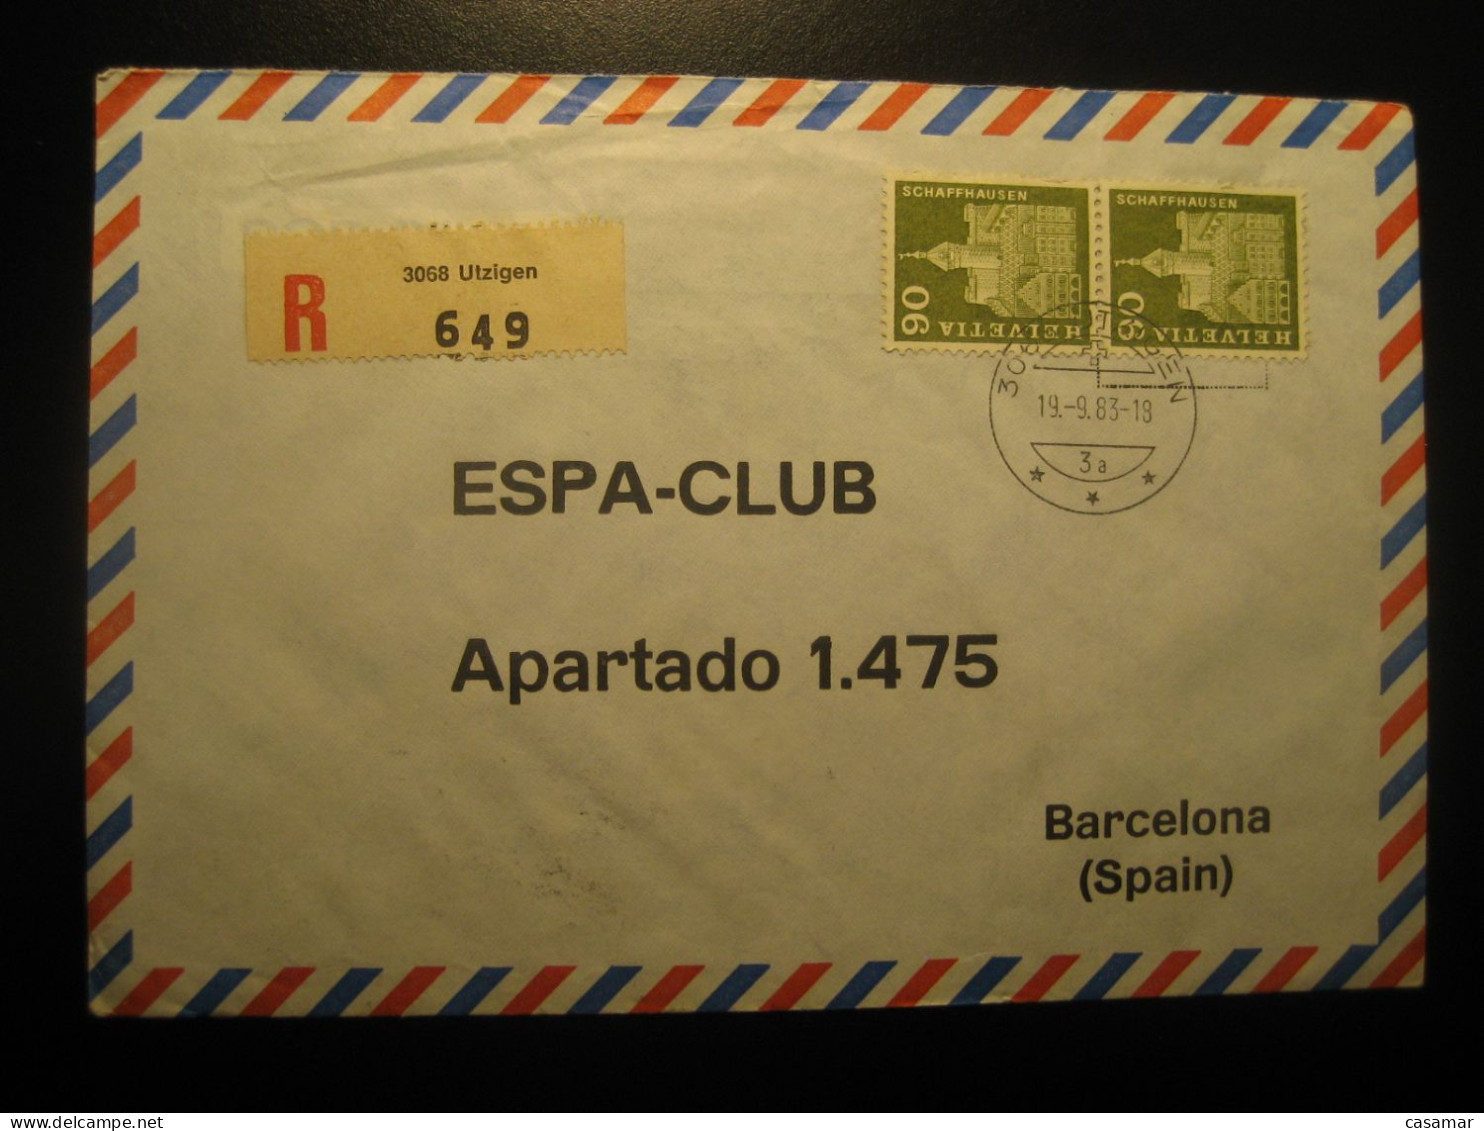 UTZIGEN 1983 Registered Air Mail Cancel Cover SWITZERLAND - Cartas & Documentos